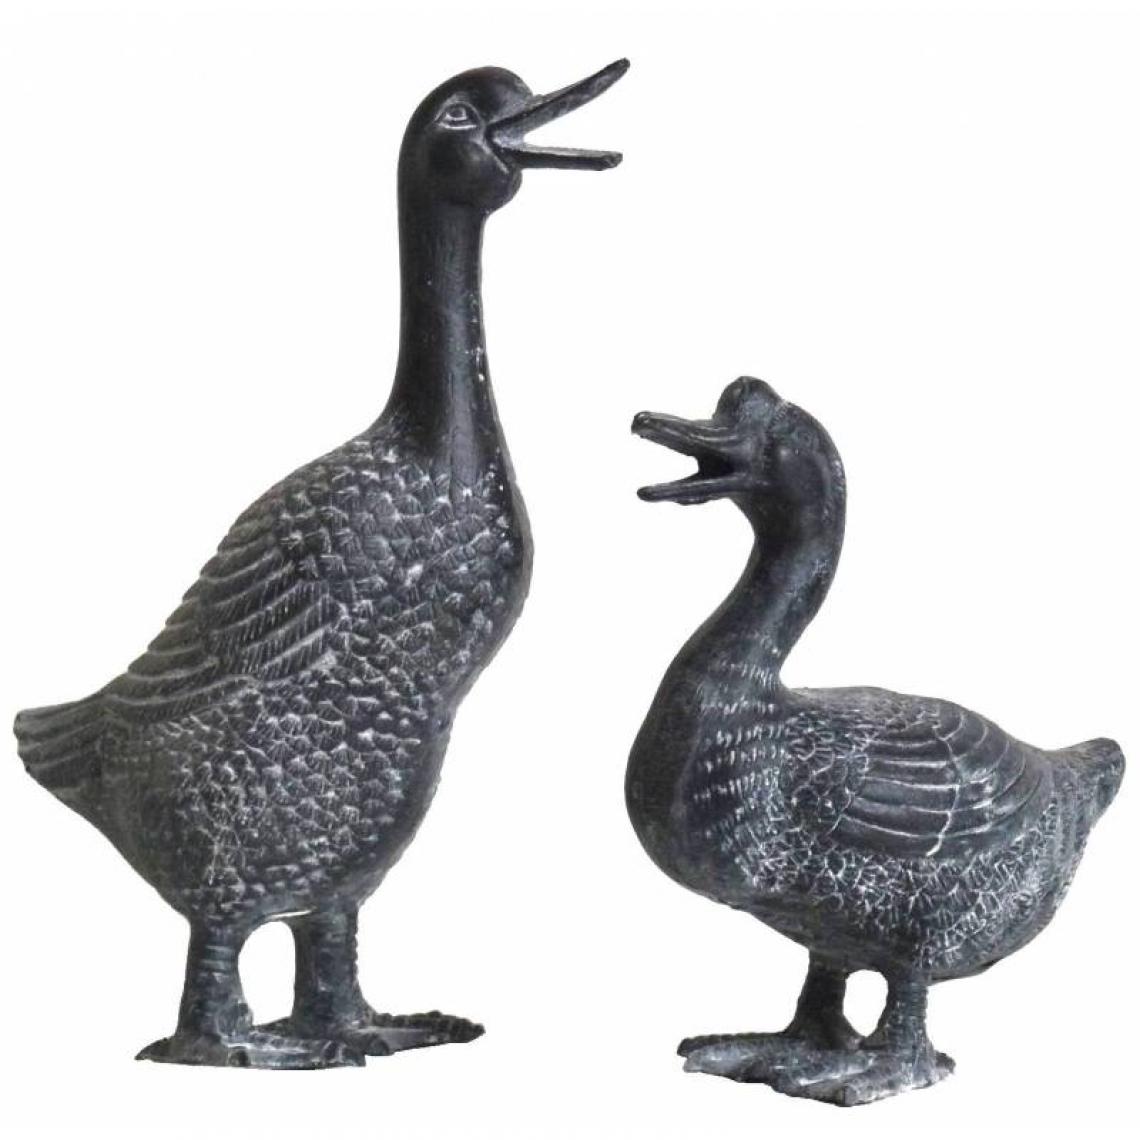 L'Héritier Du Temps - Couple de Canard et Cane Statuette Oiseaux Aquatiques en Fonte Grise - Petite déco d'exterieur